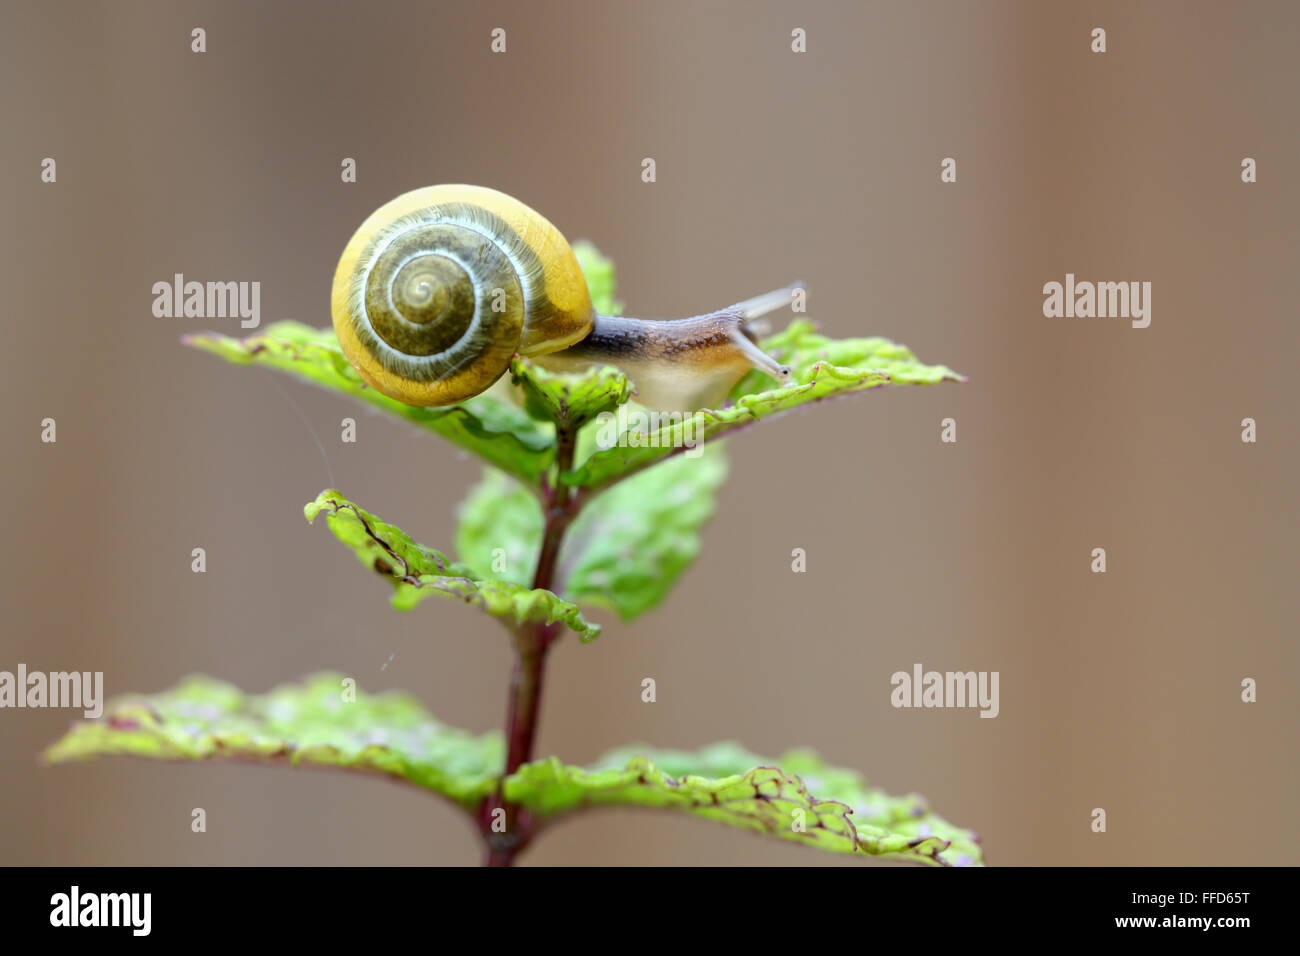 A small yellow banded garden snail climbing over a garden plant Stock Photo